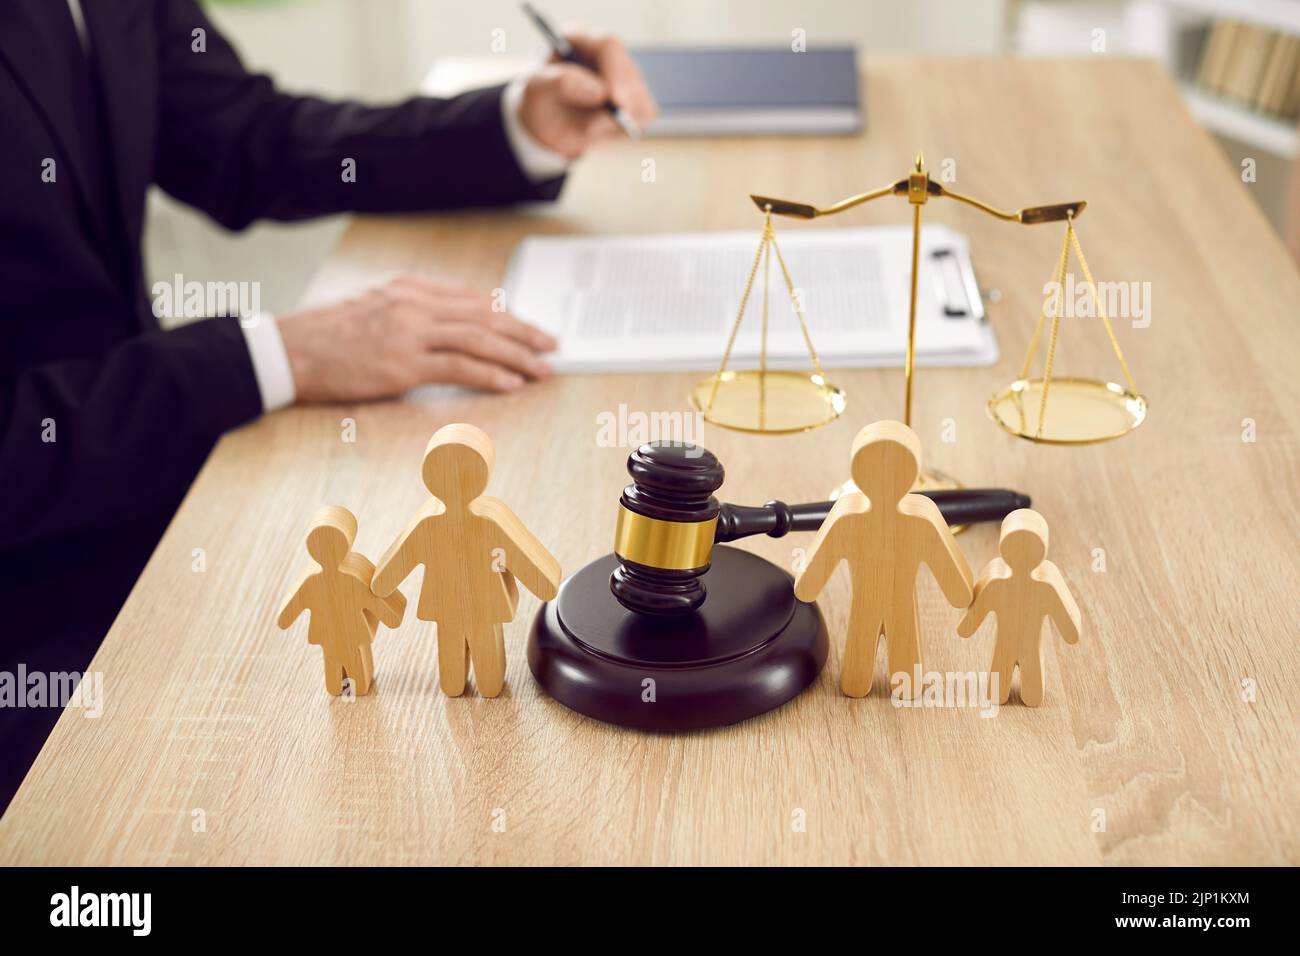 Les chiffres de la famille sont séparés par le gavage du juge, qui symbolise le cas de divorce et la garde de l'enfant Banque D'Images